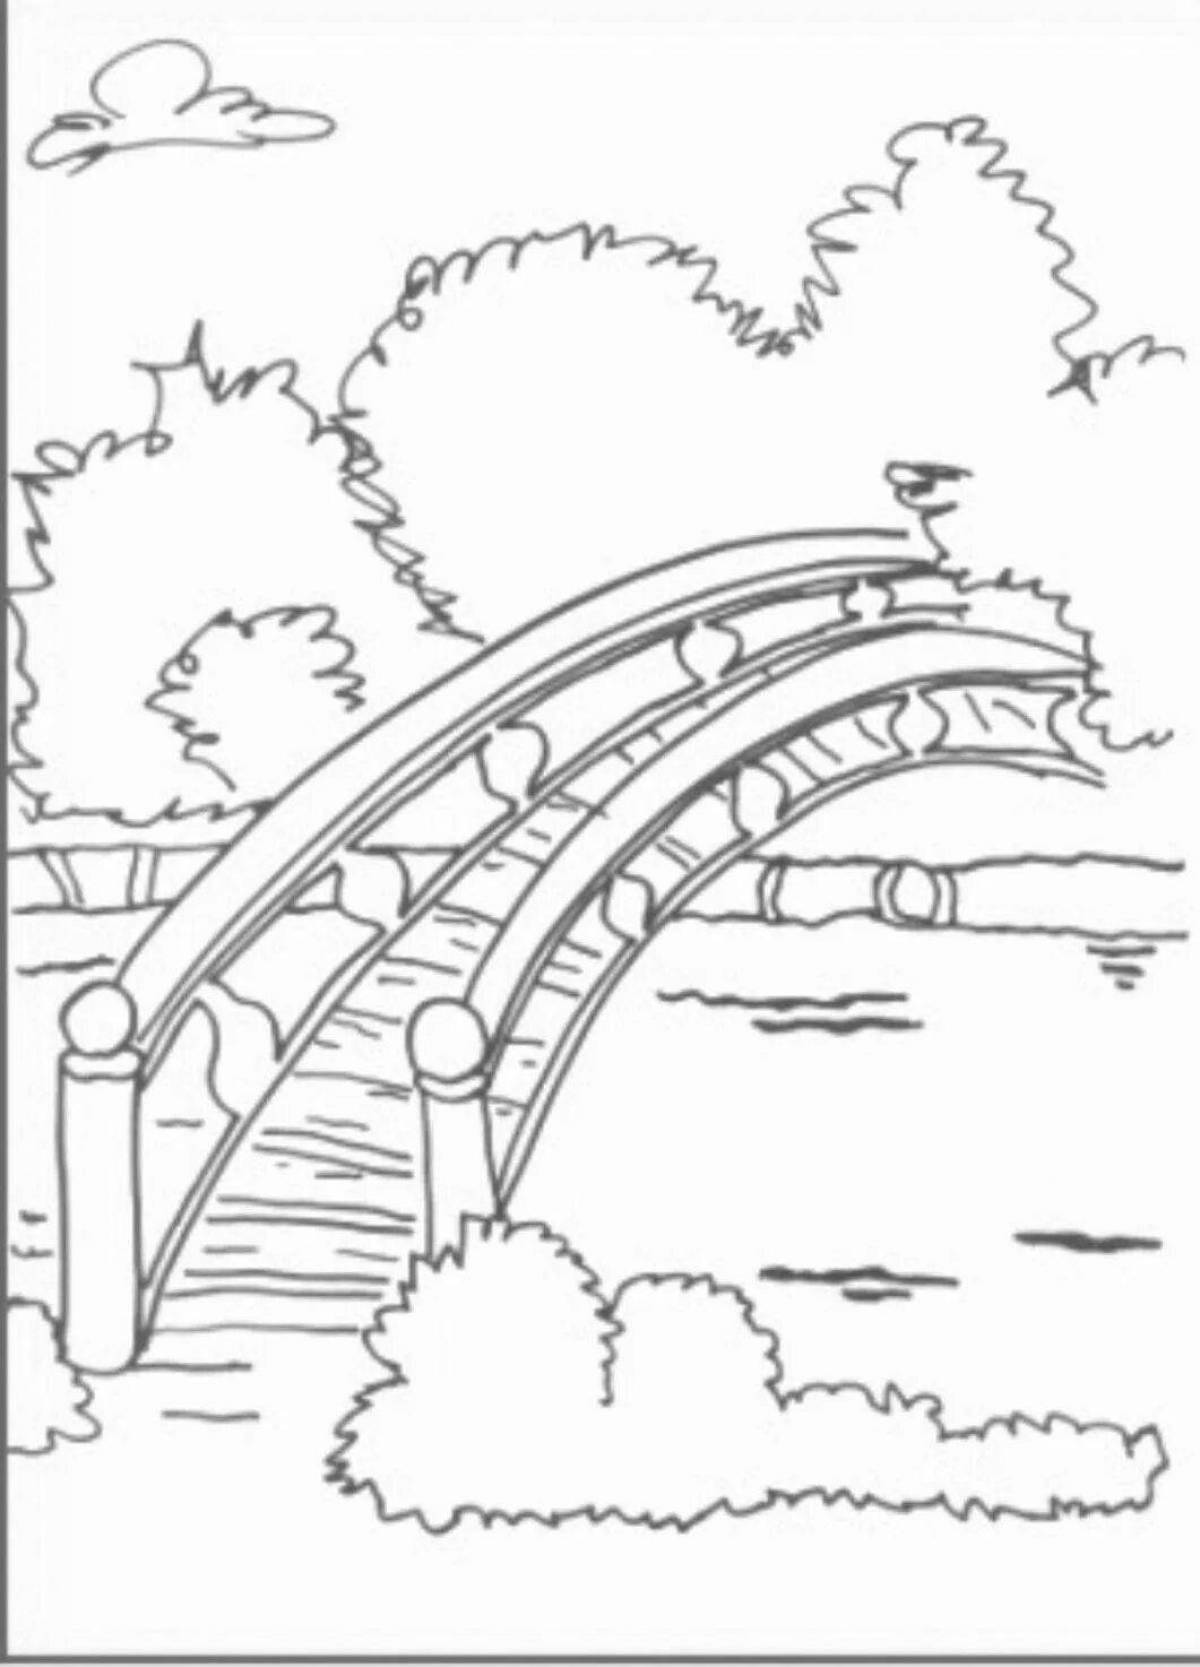 Great bridge coloring book for kids